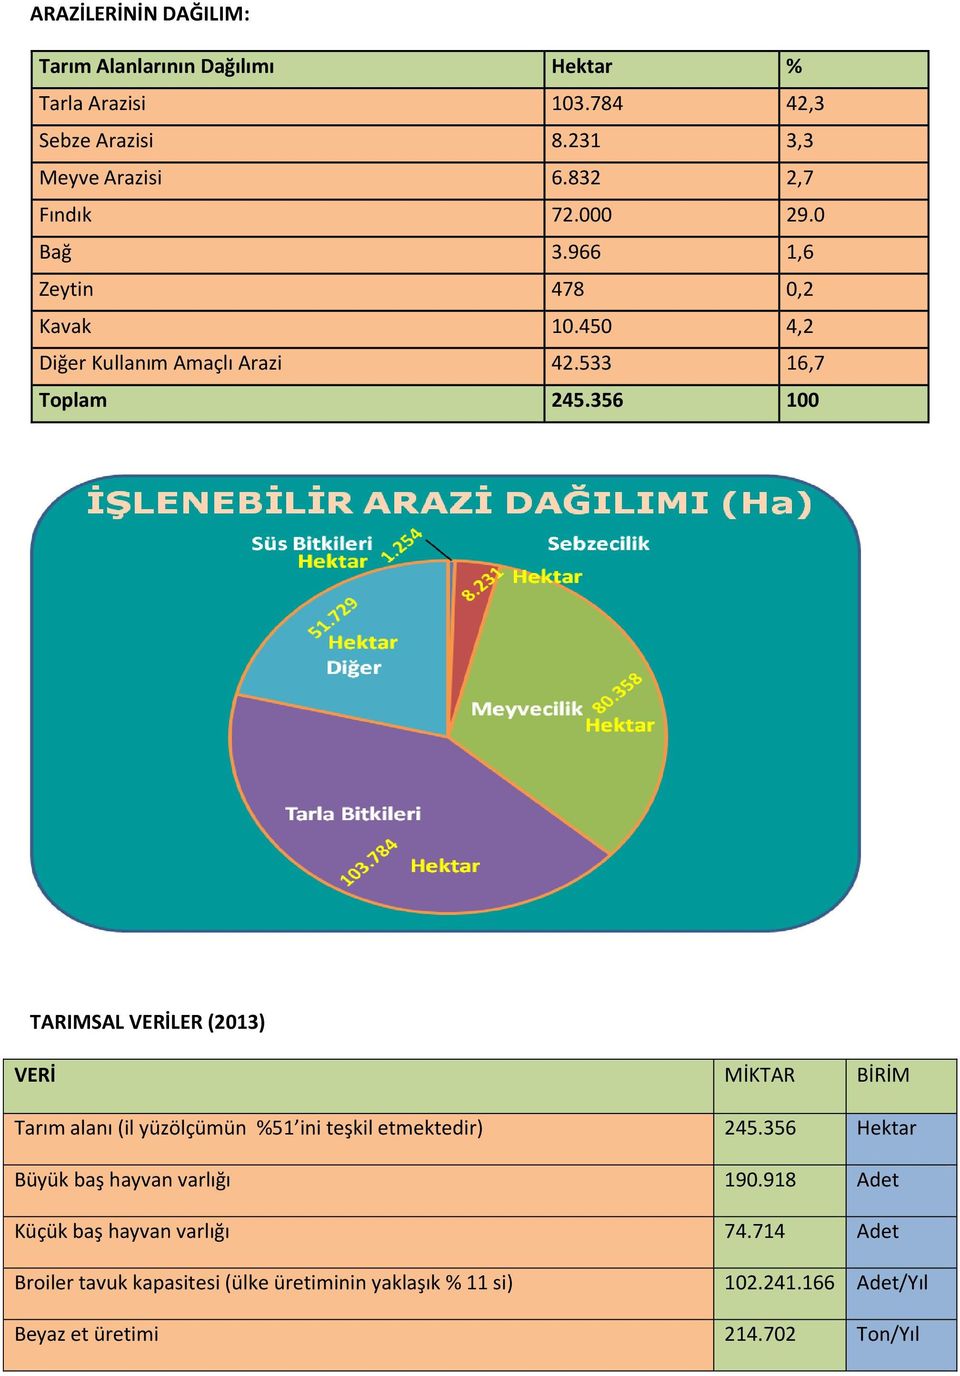 356 100 TARIMSAL VERİLER (2013) VERİ MİKTAR BİRİM Tarım alanı (il yüzölçümün %51 ini teşkil etmektedir) 245.